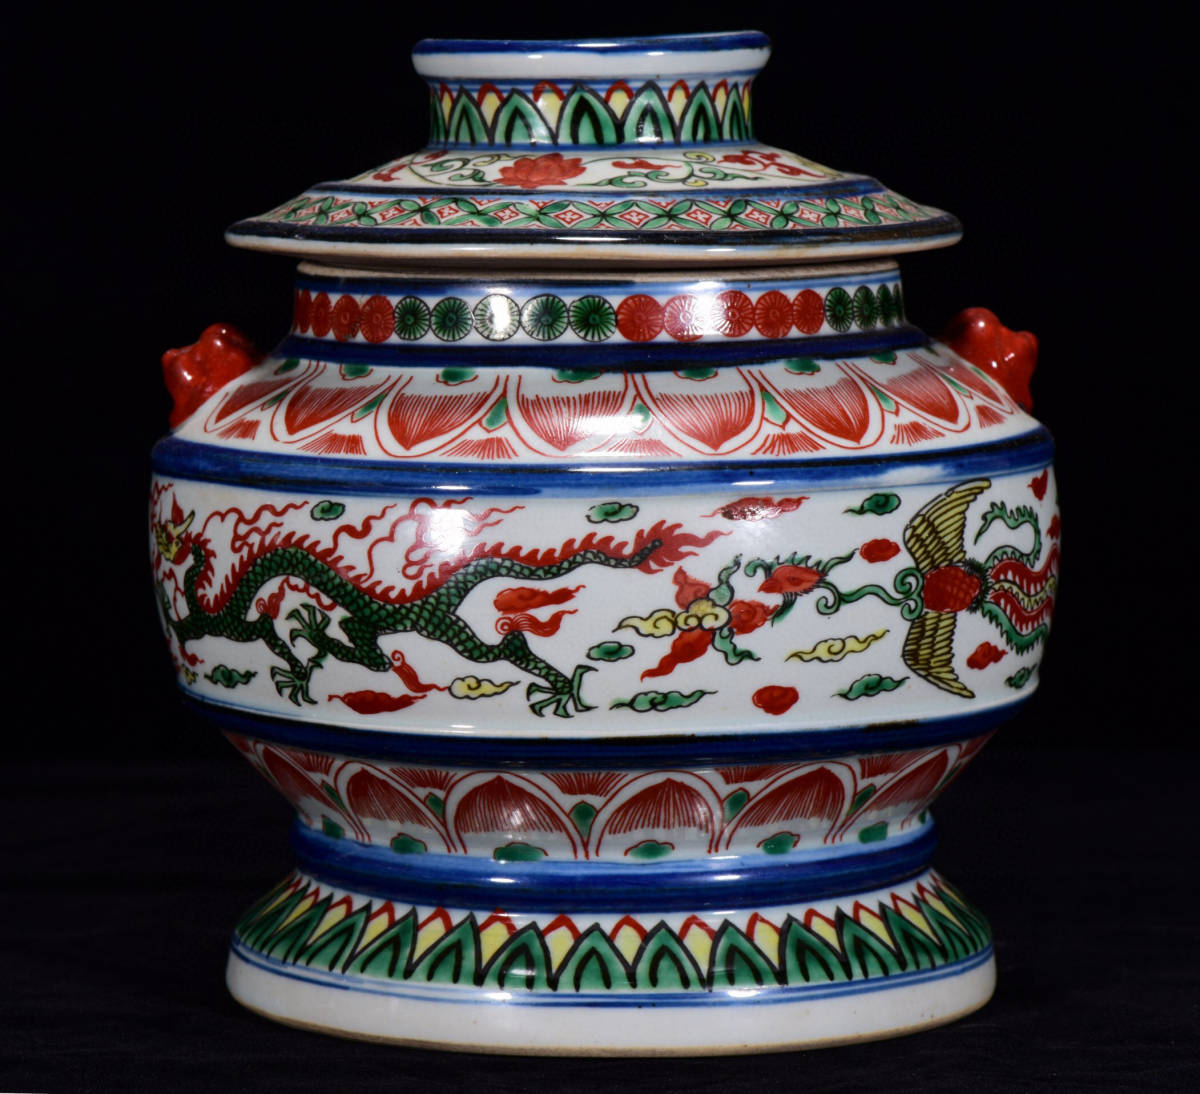 ▽鴻▽ 明 萬暦年製款 古陶瓷品 五彩 龍鳳紋 雙耳蓋罐 置物 古賞物